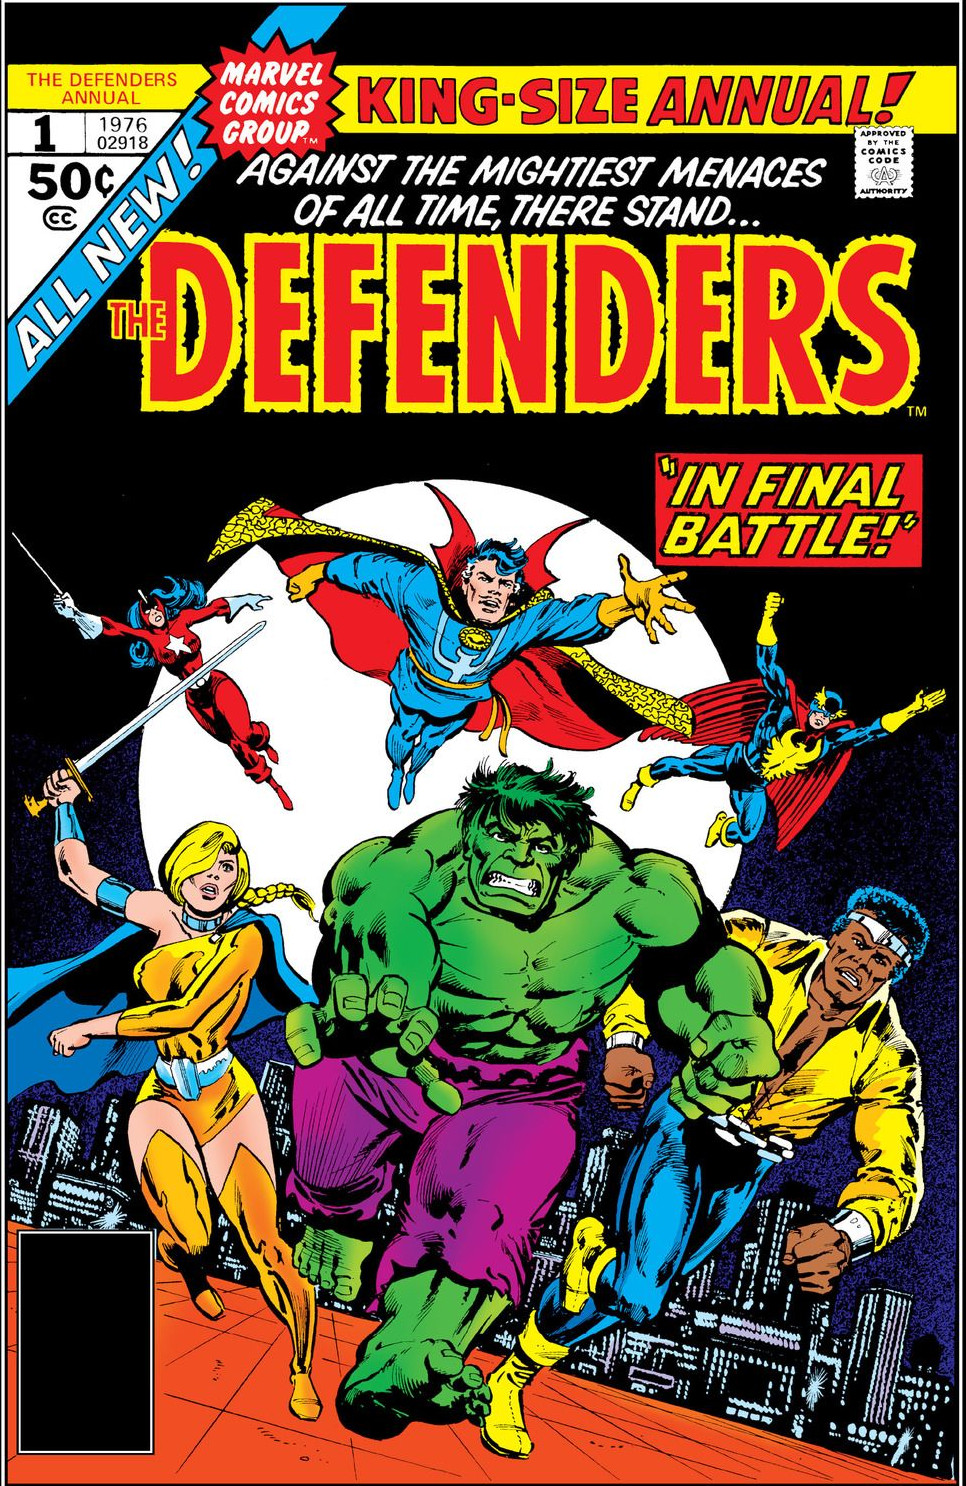 Защитники том 1. Защитники Марвел. Marvel Defenders #4. D-men the Defenders. Marvel Defenders #5.